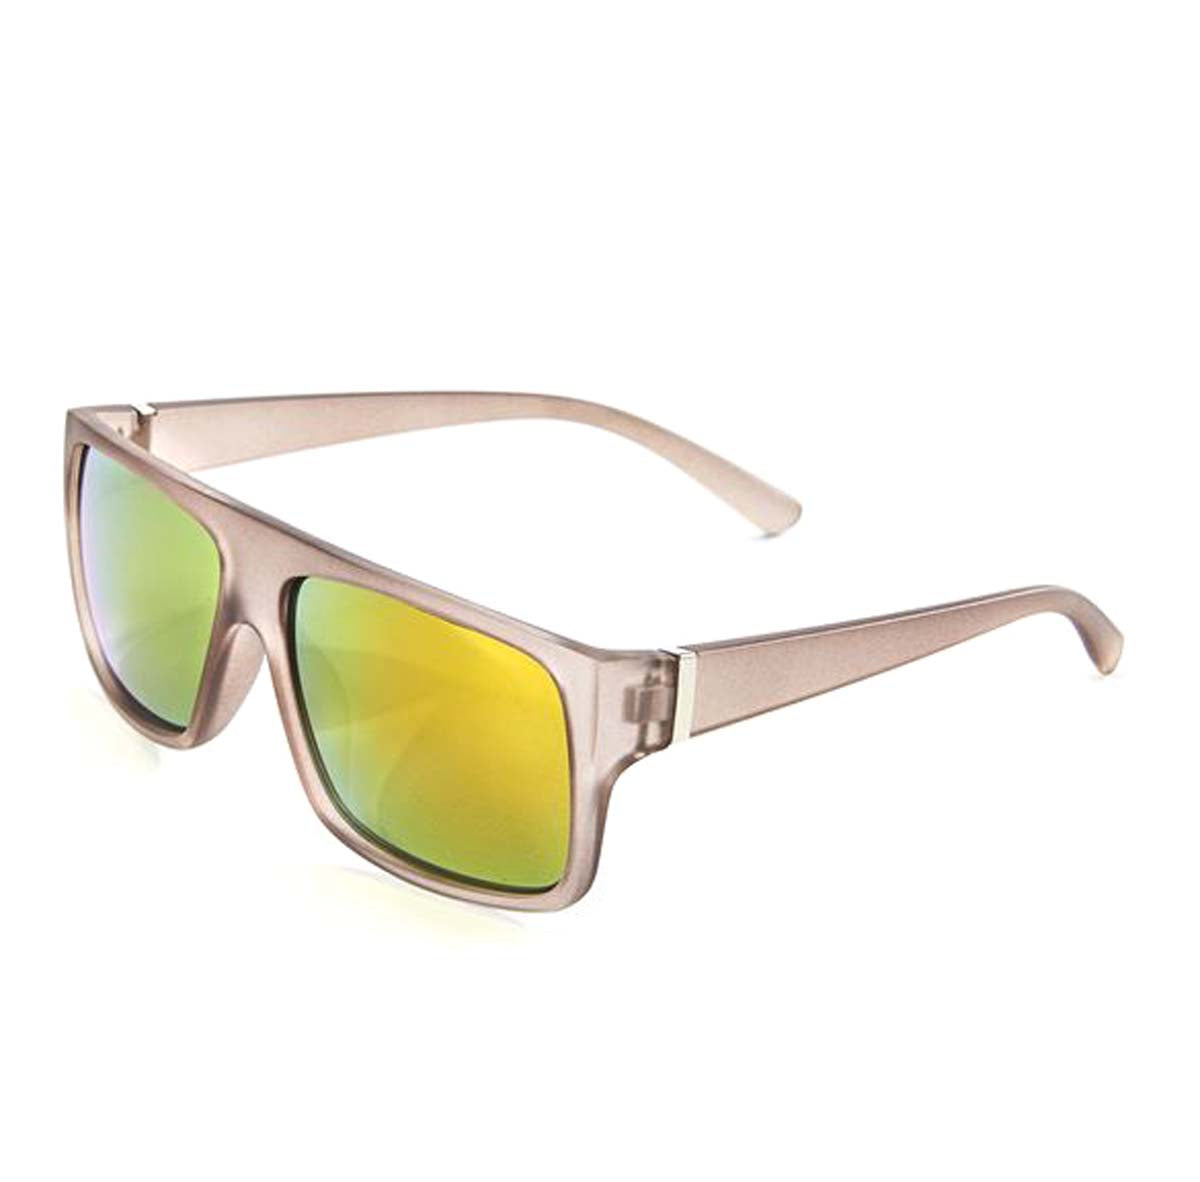 Ombre Blue/Green Mirrored Design Sunglasses